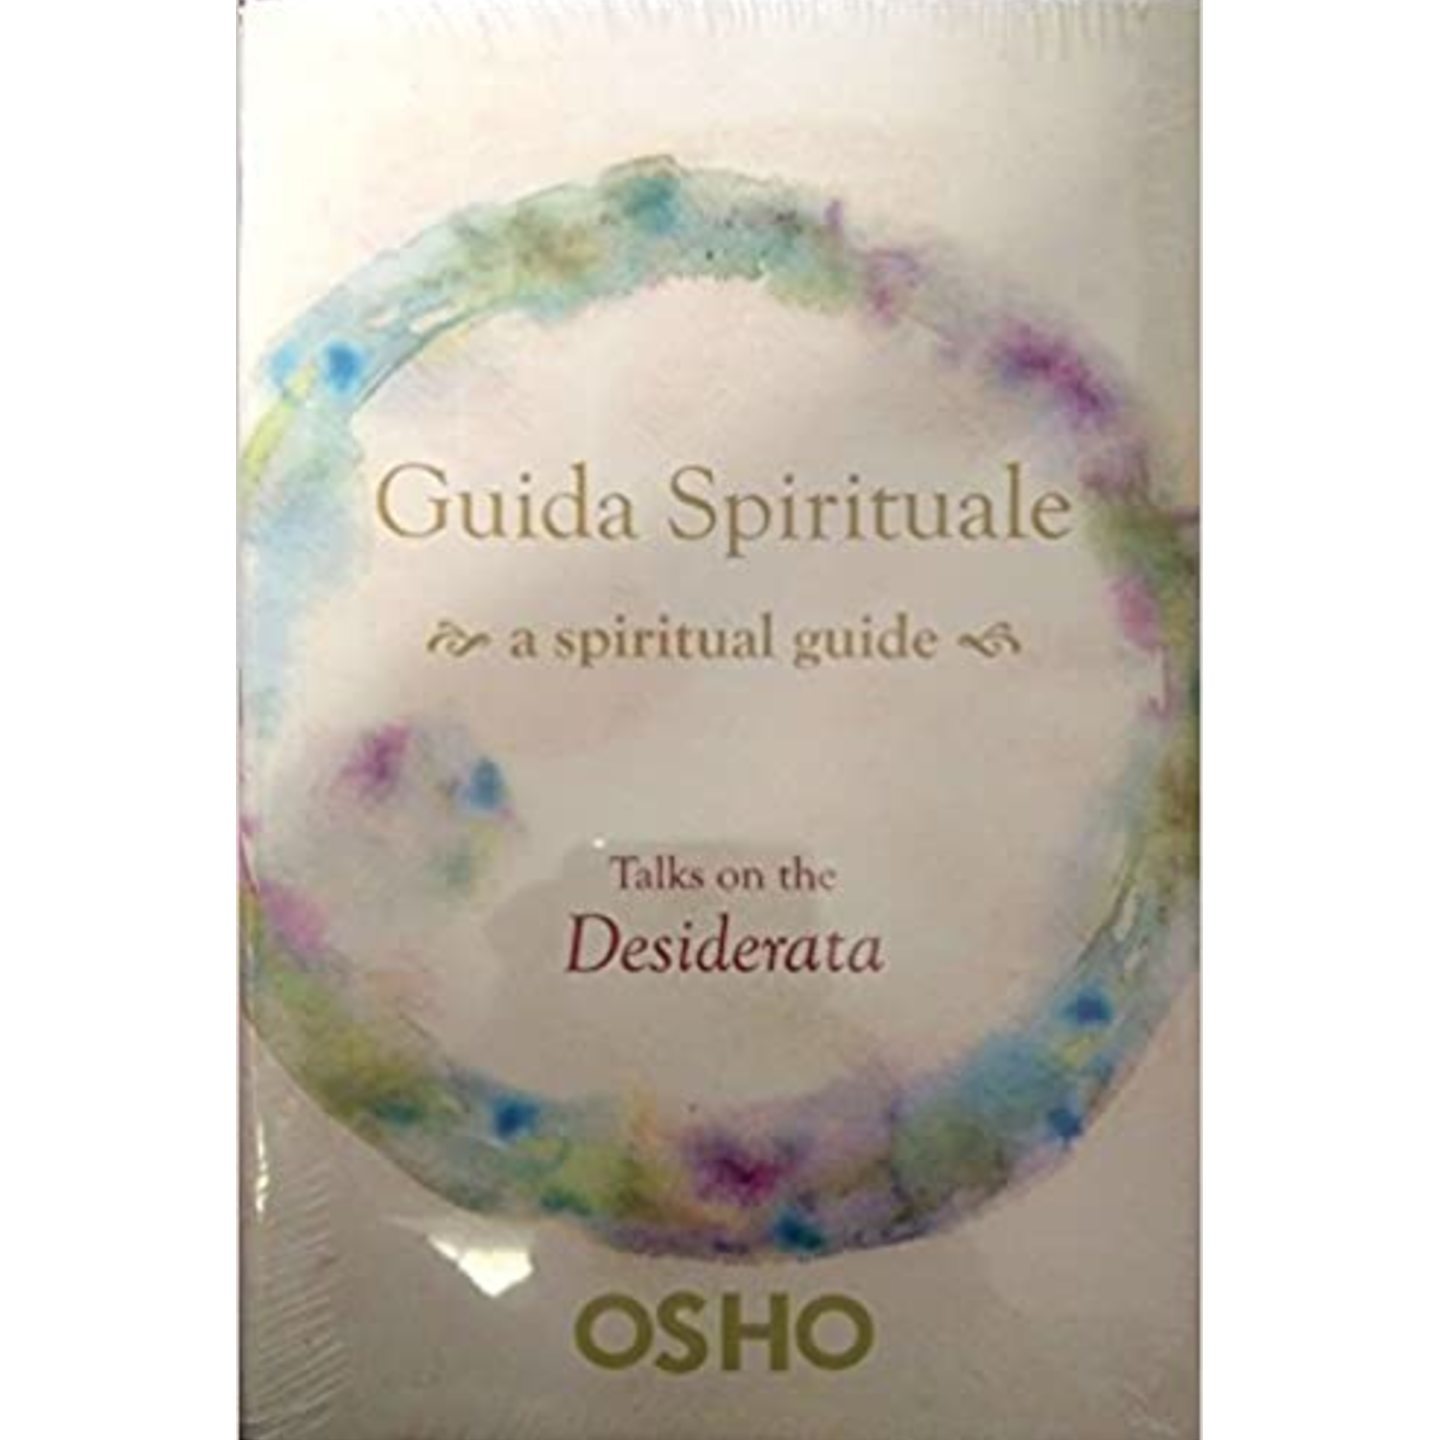 Guida Spirituale A Spiritual Guide